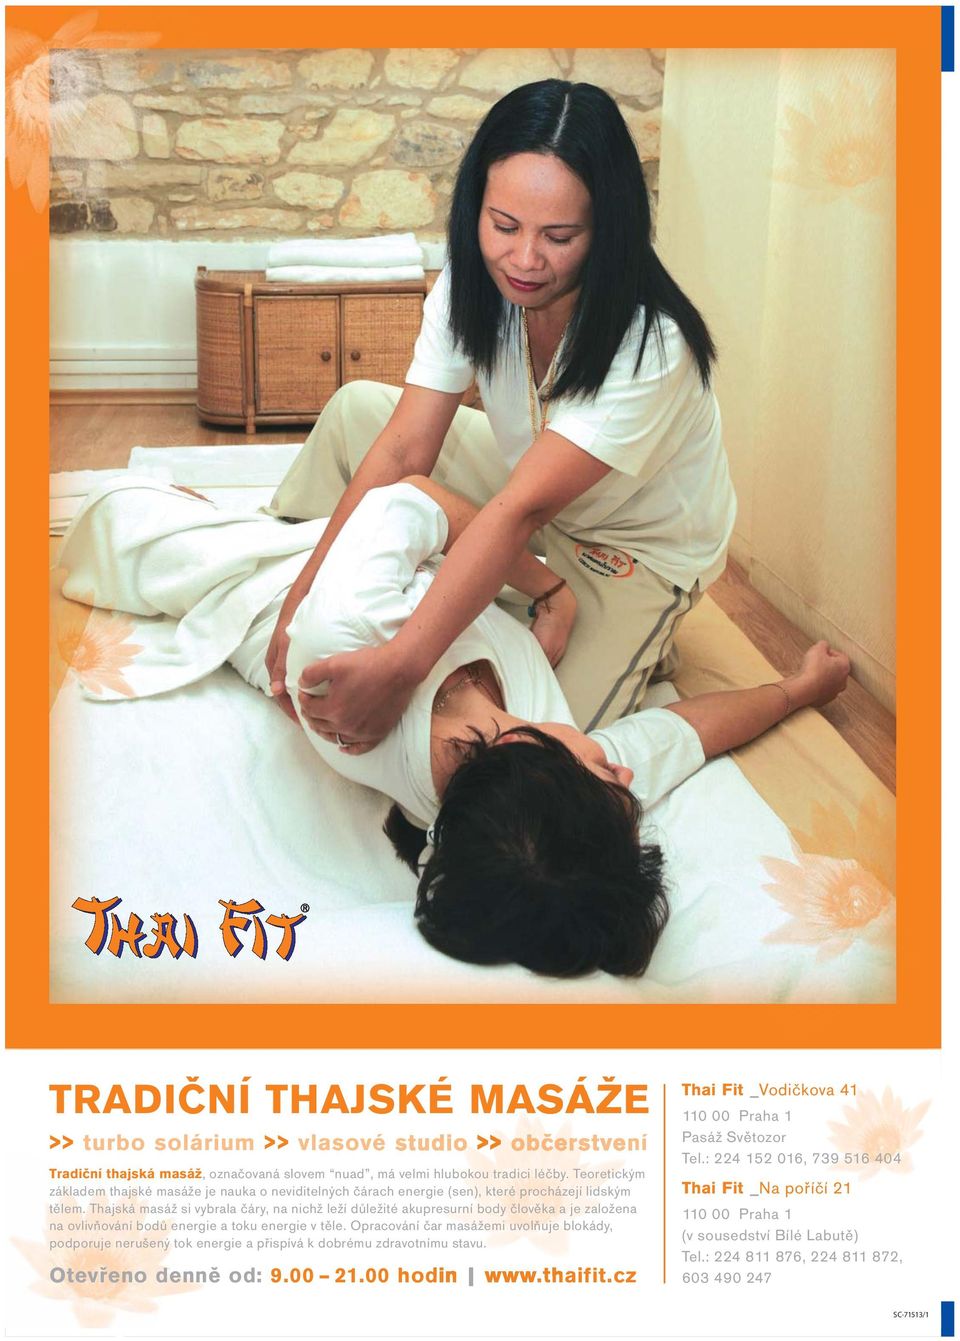 Thajská masáž si vybrala čáry, na nichž leží důležité akupresurní body člověka a je založena na ovlivňování bodů energie a toku energie v těle.